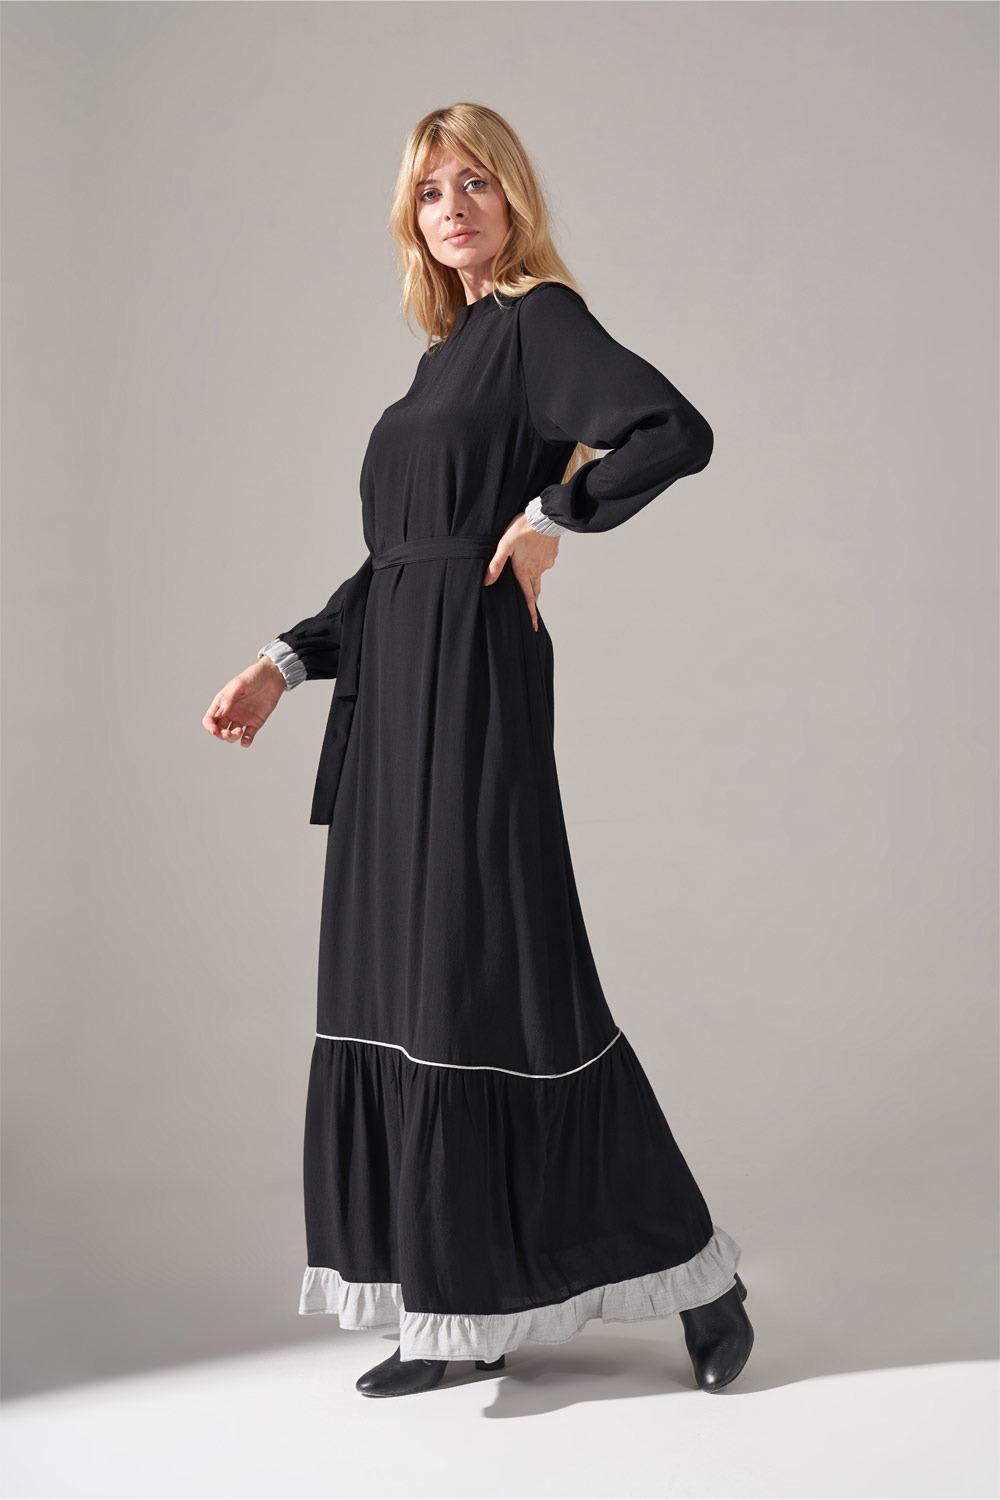 Ruffle Detail Maroken Dress (Black)